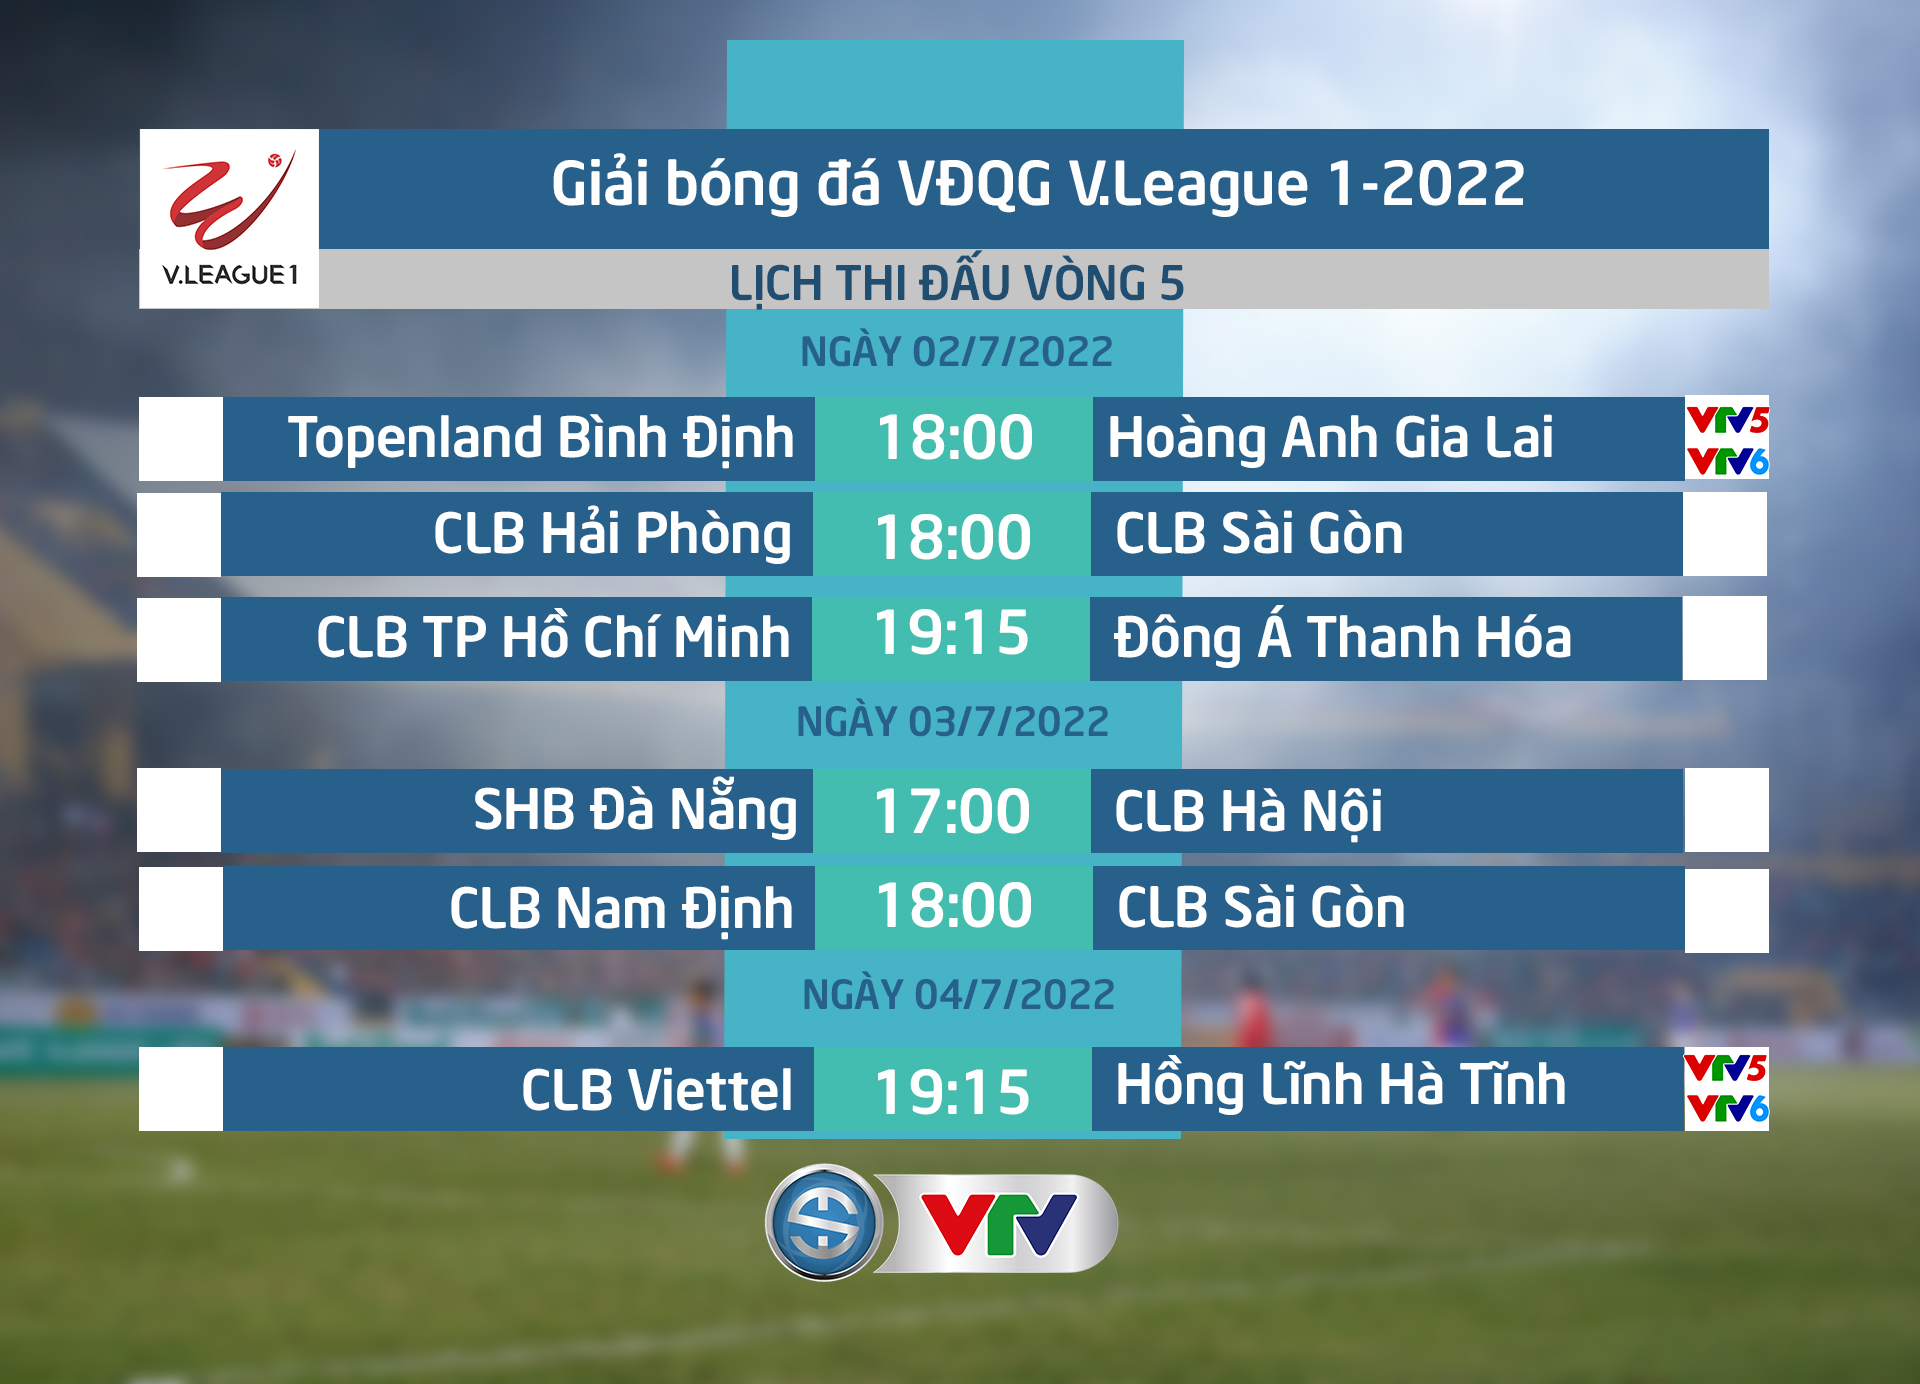 Nhận định trận đấu: Topenland Bình Định - HAGL - 18h00 ngày 2/7 trên VTV5, VTV6